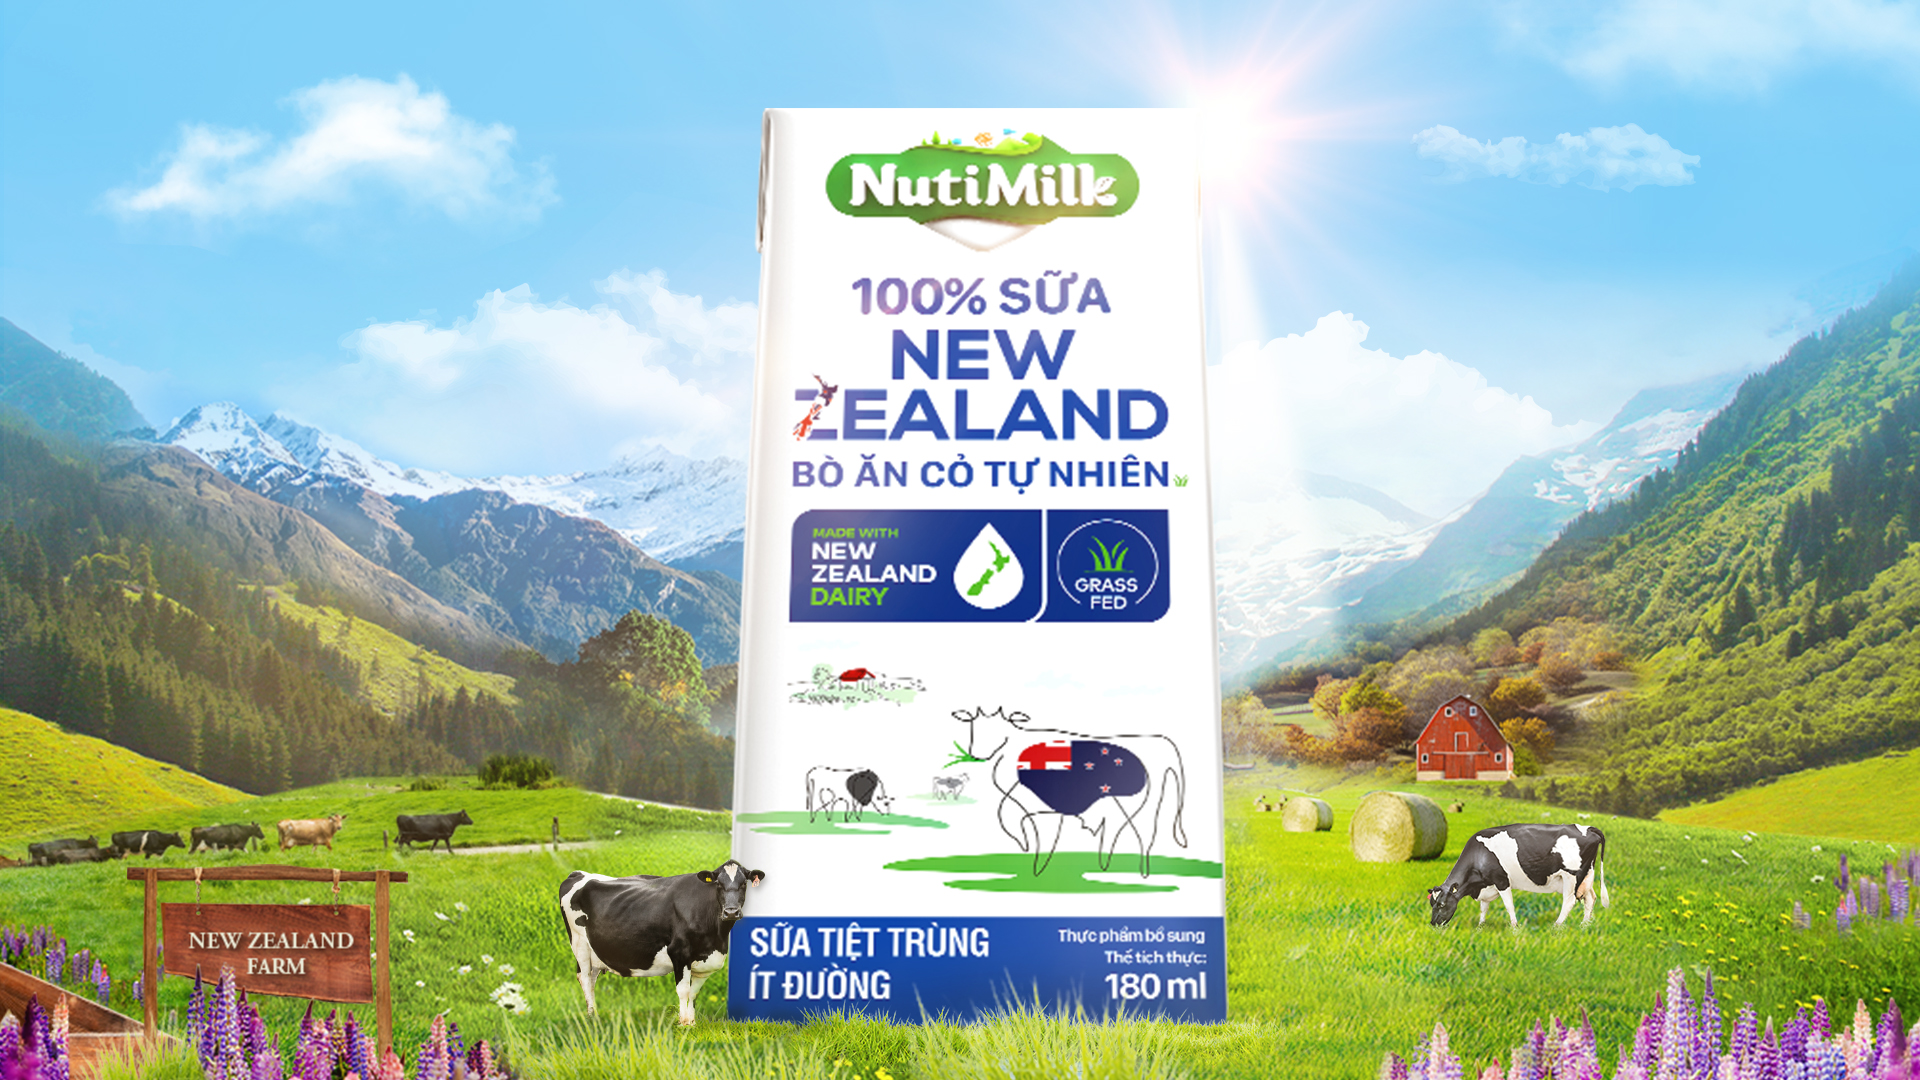 NutiMilk 100% Sữa New Zealand Bò Ăn Cỏ Tự Nhiên, sản phẩm vừa thơm ngon lại giàu dinh dưỡng